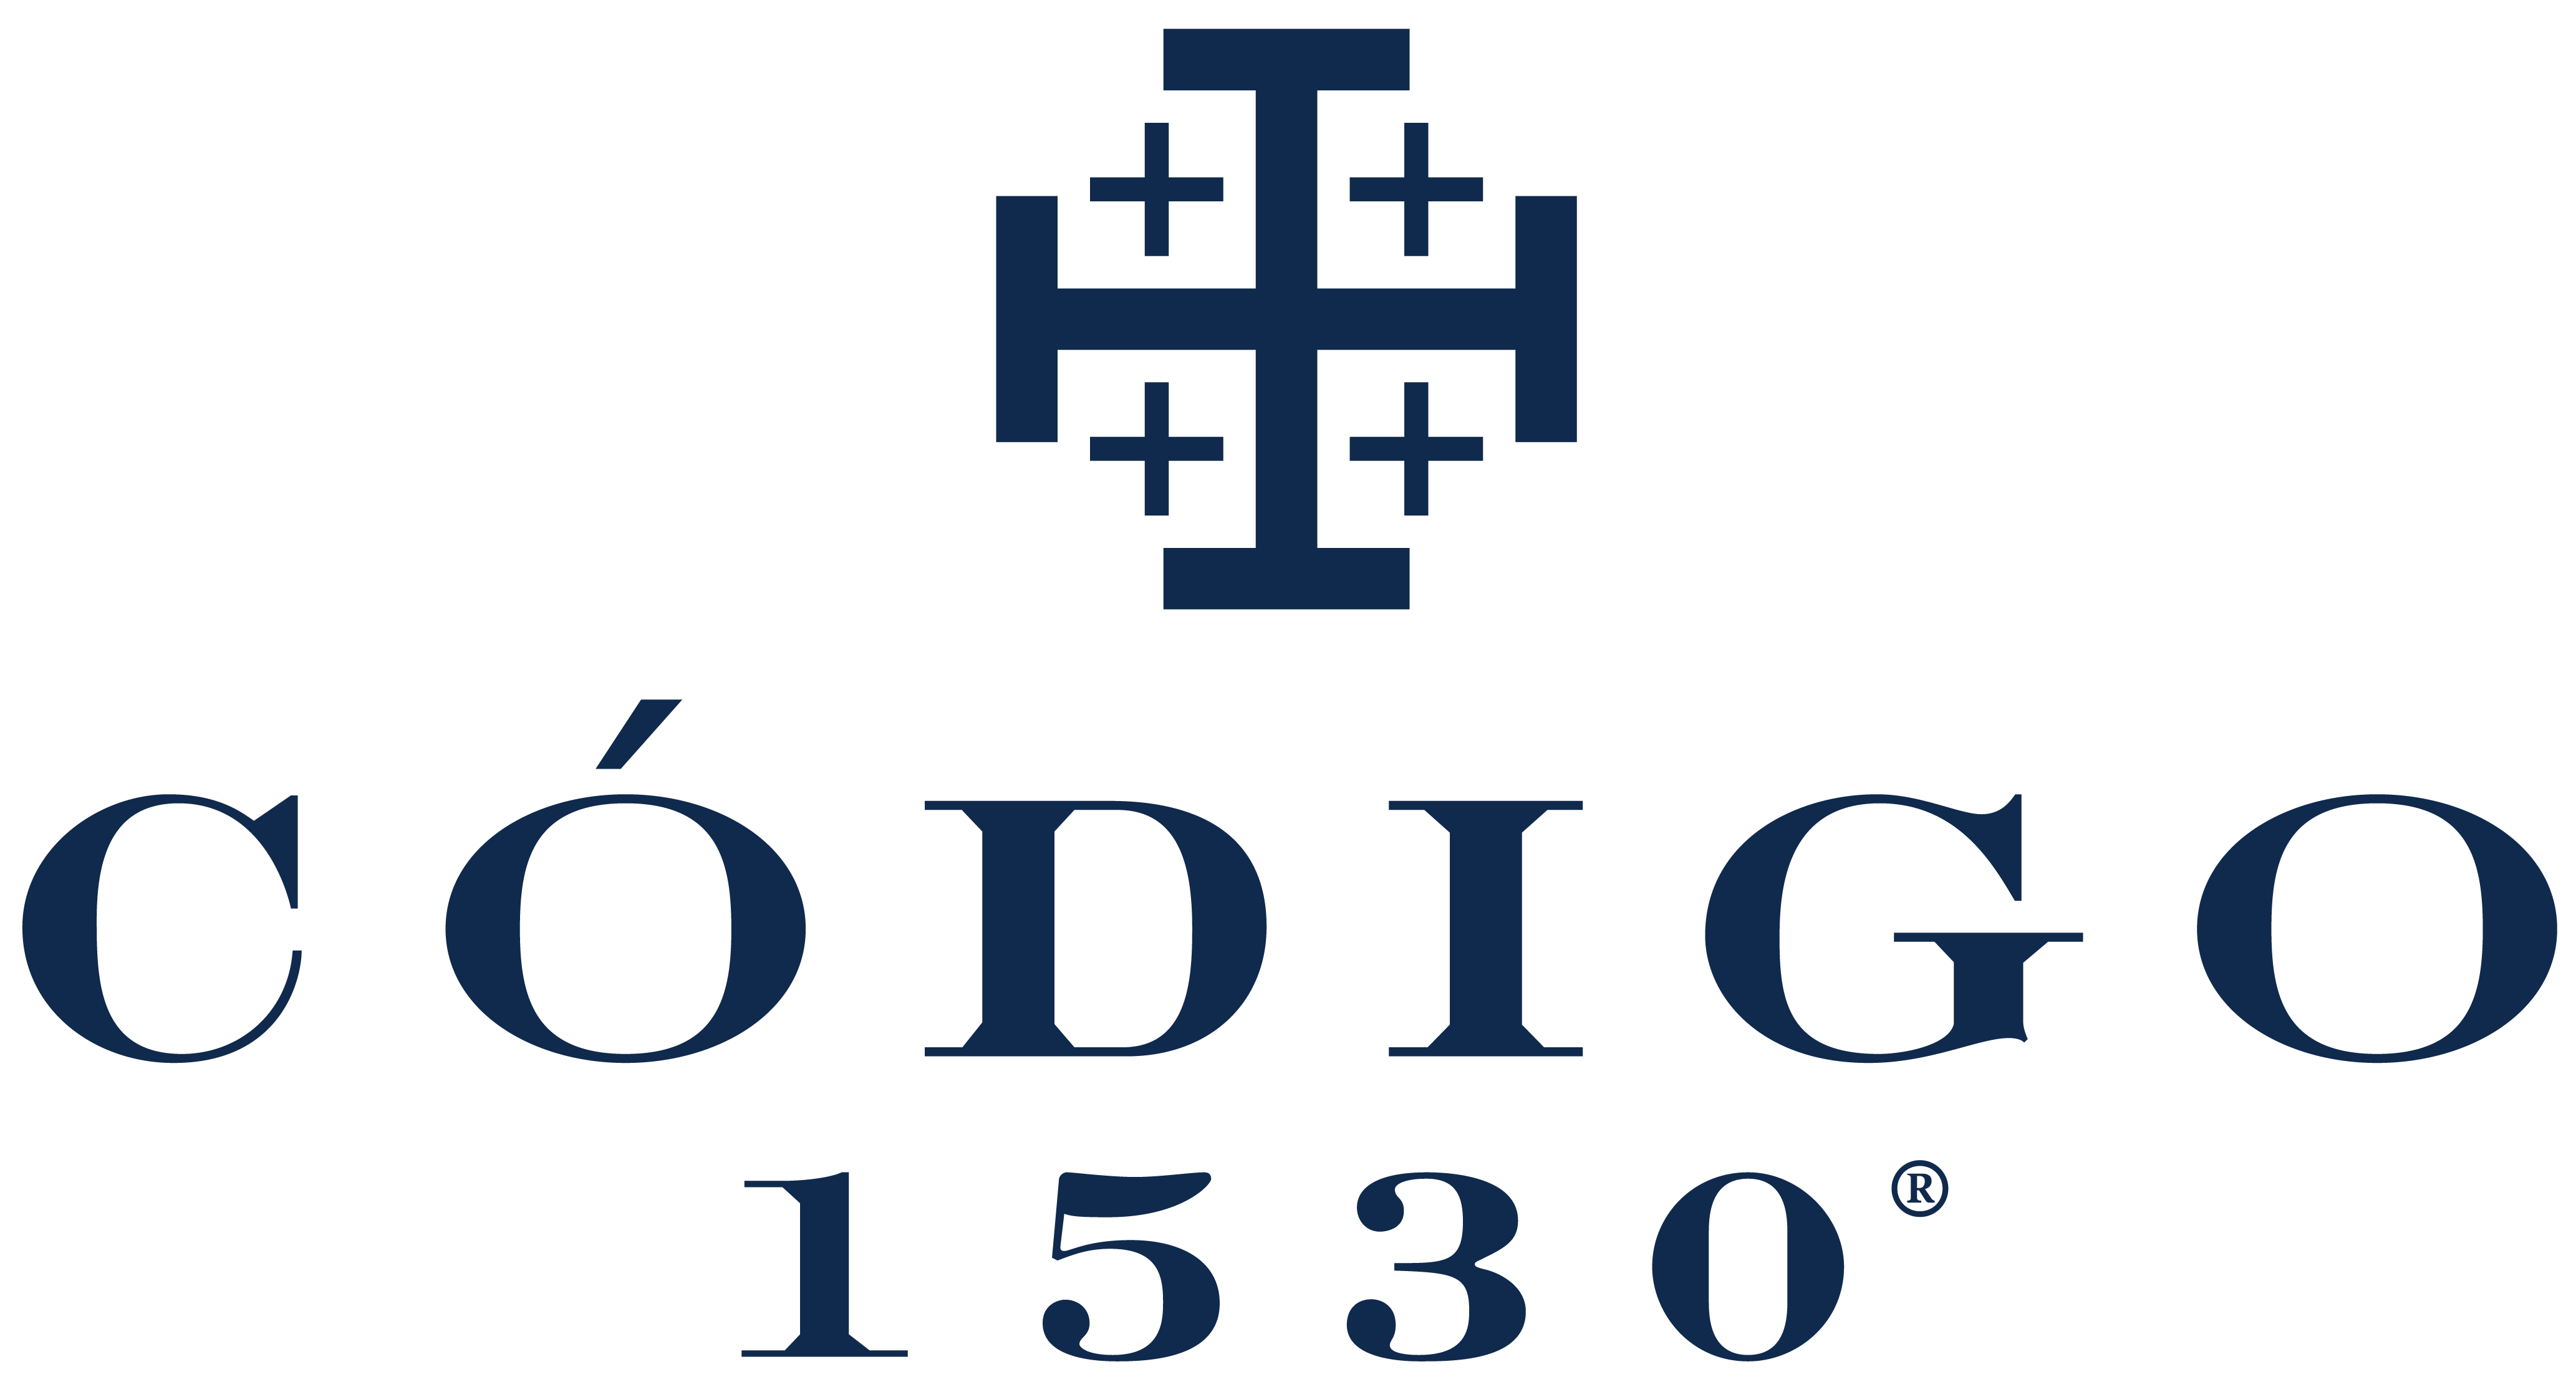 Codigo Logo